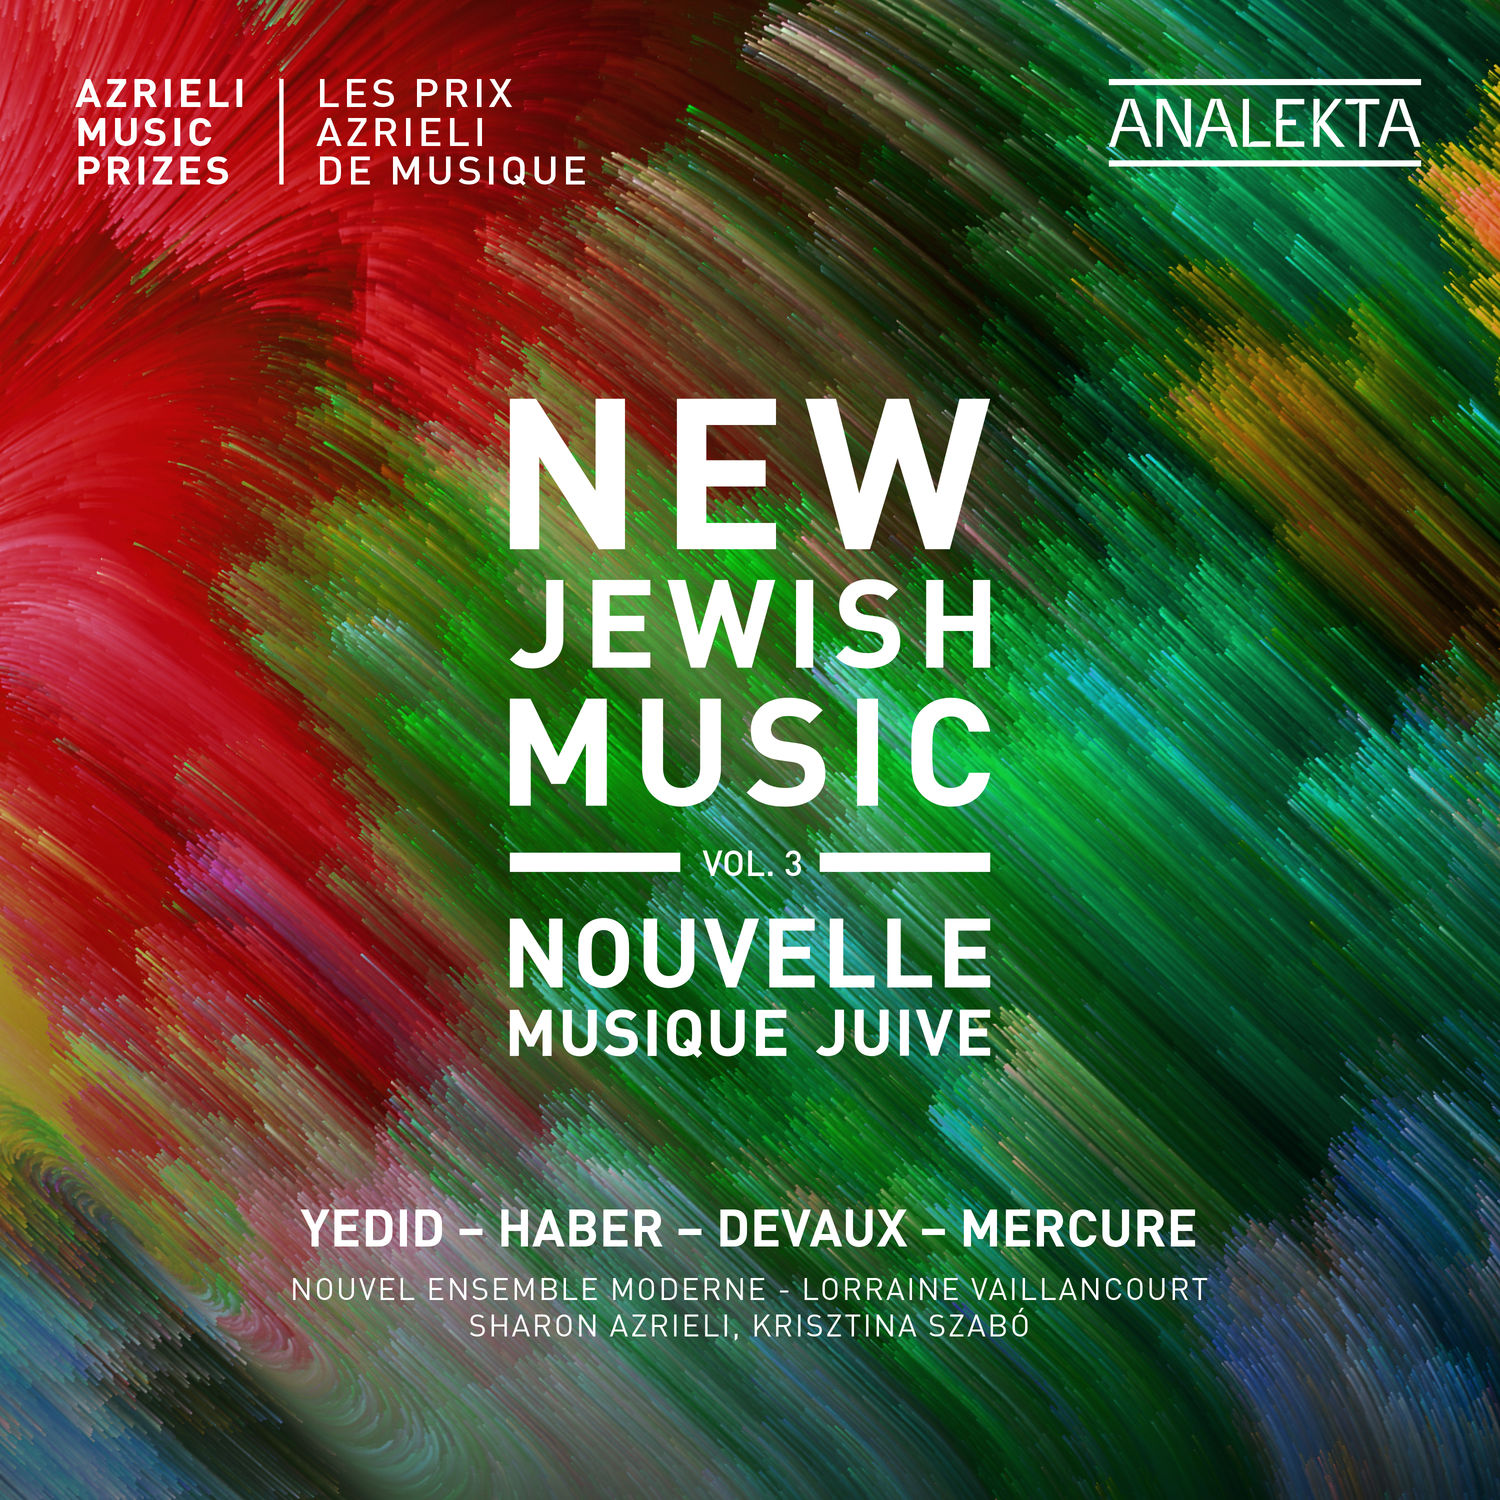 Nouvel Ensemble Moderne – New Jewish Music, Vol. 3 – Azrieli Music Prizes (2021) [FLAC 24bit/96kHz]